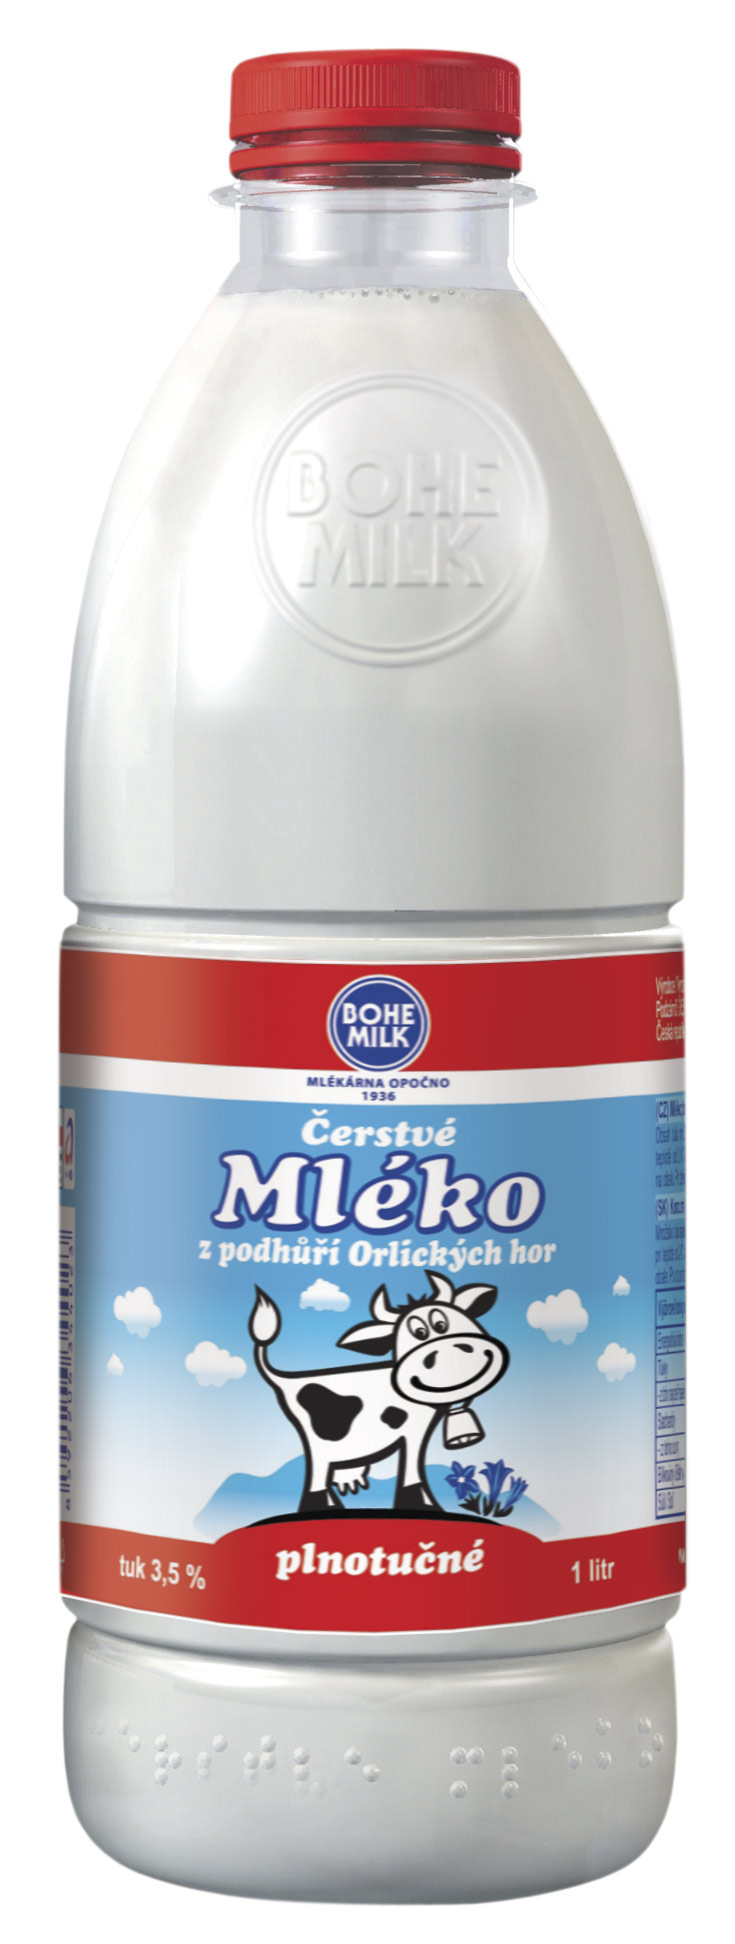 Čerstvé mléko plnotučné - PET lahev